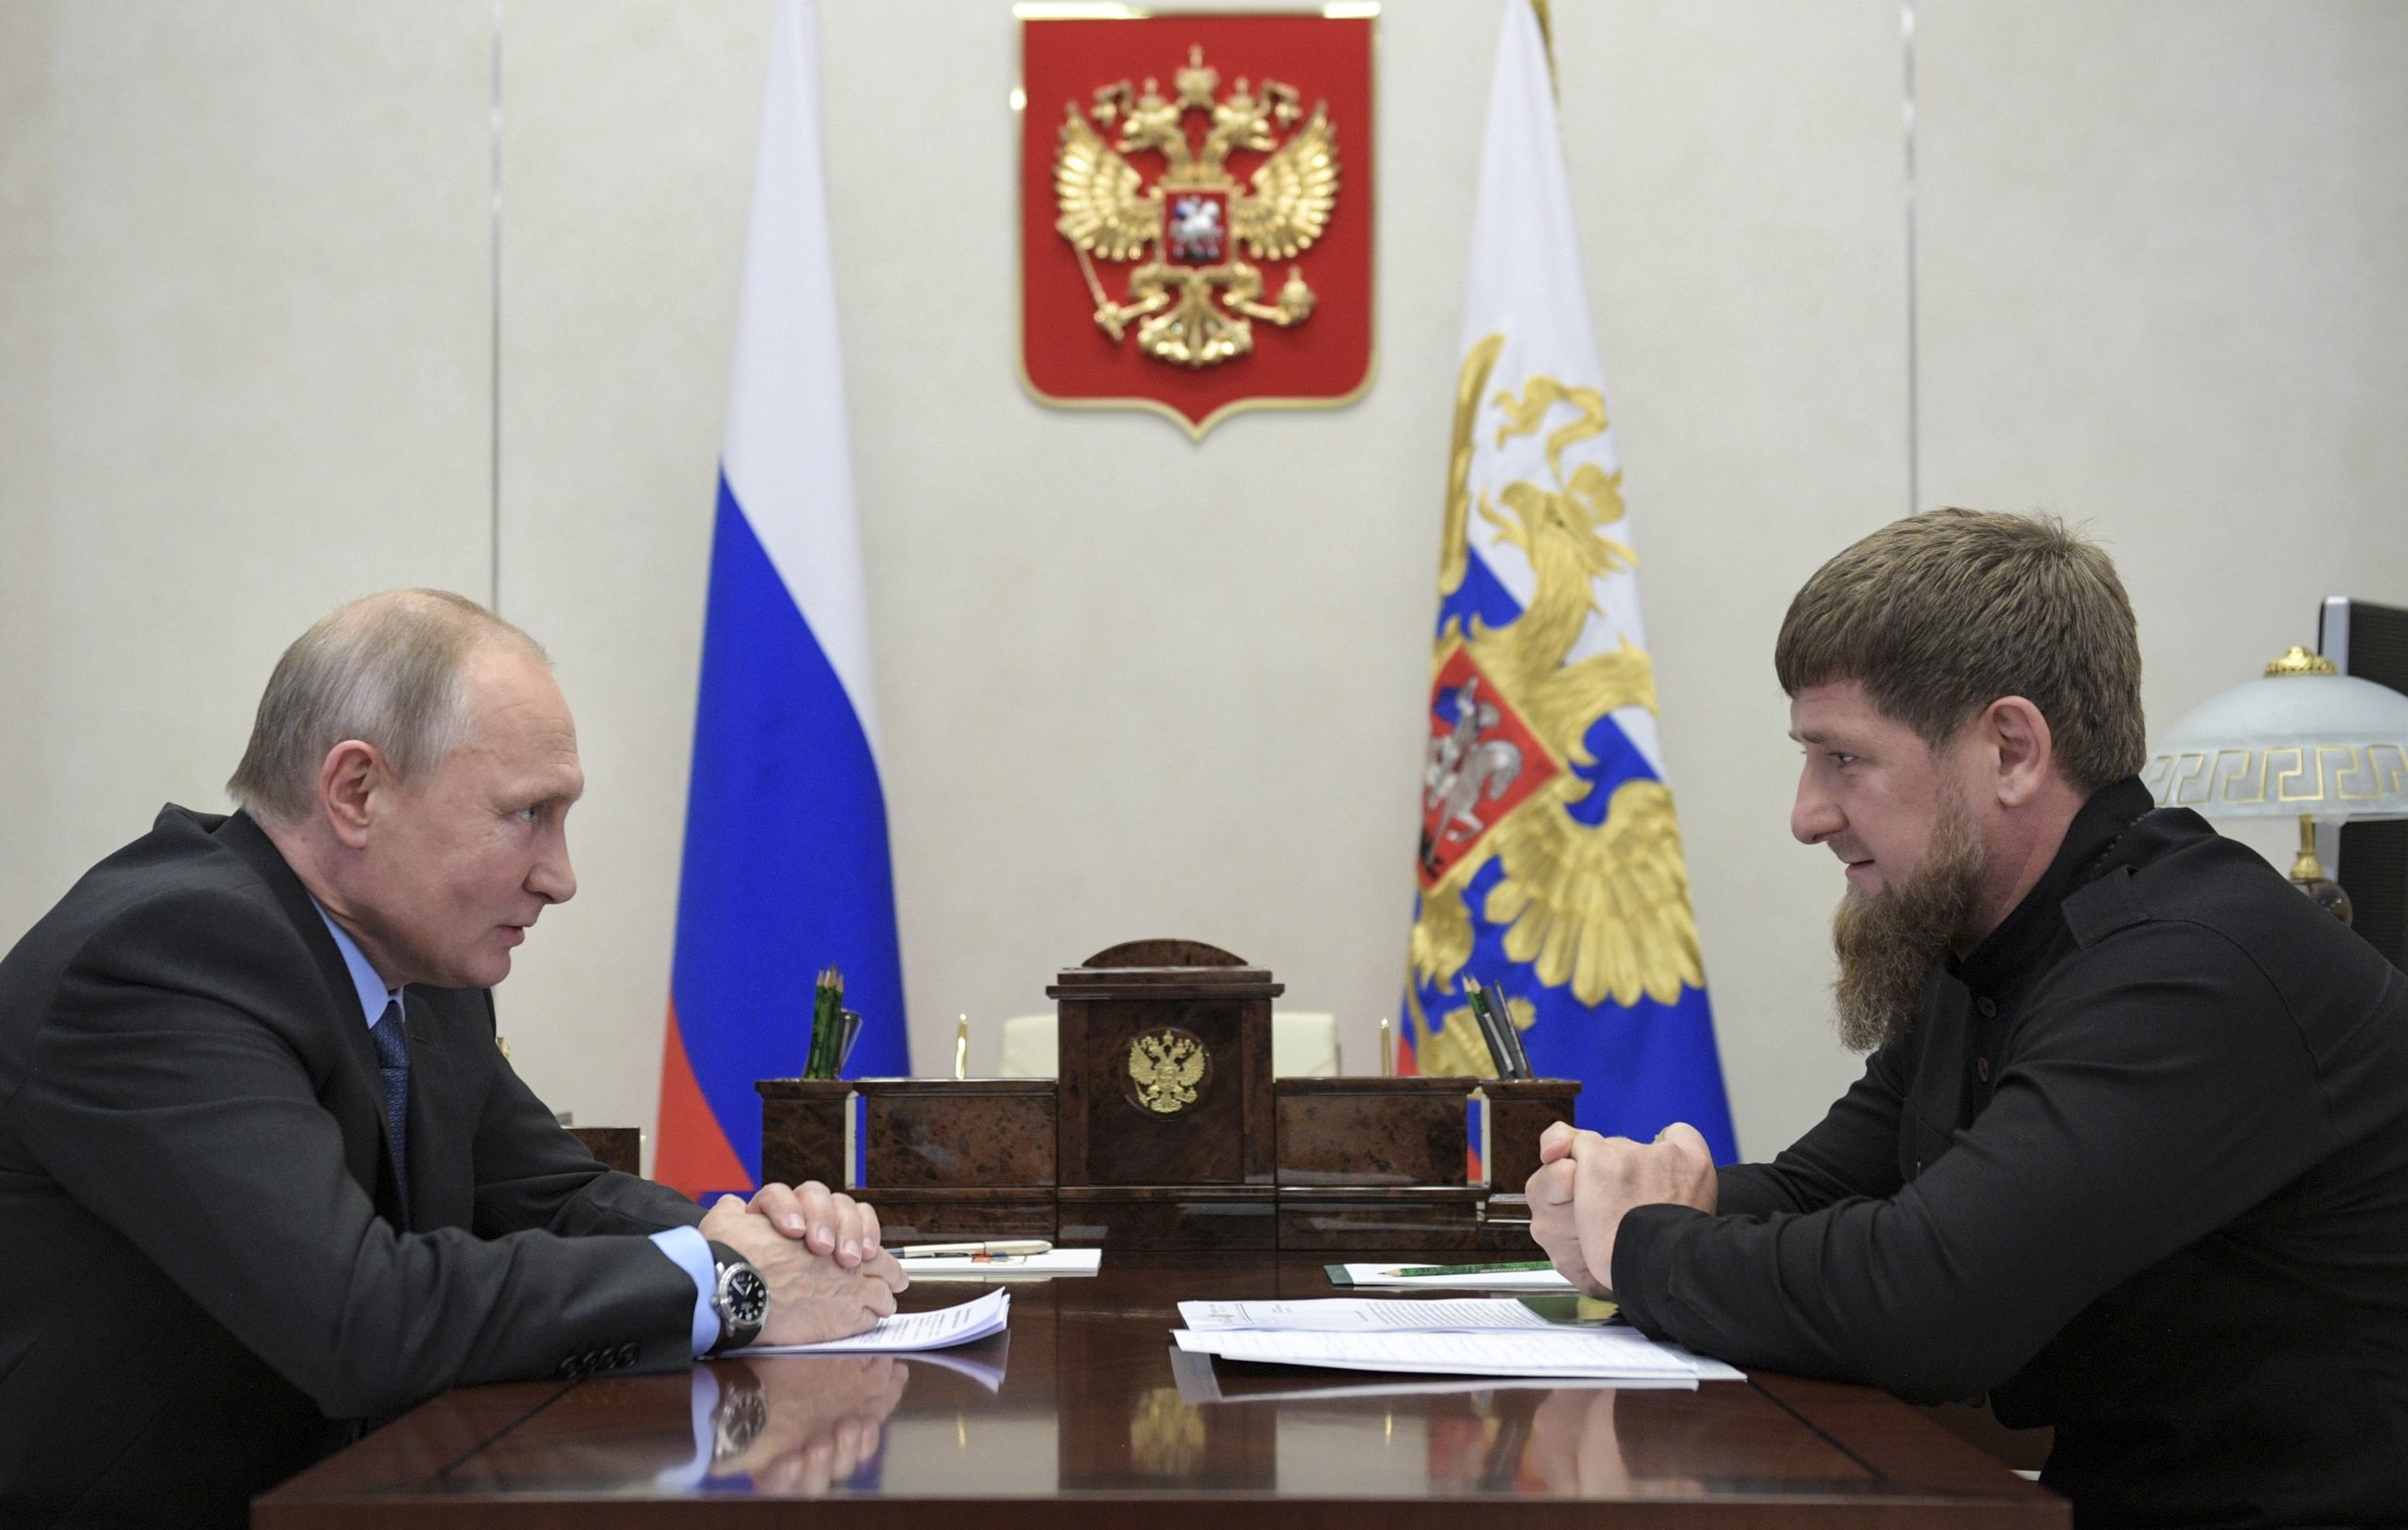 Στην πρώτη γραμμή του πολέμου στην Ουκρανία ο Τσετσένος ηγέτης – Απειλές Πούτιν προς τις ΗΠΑ